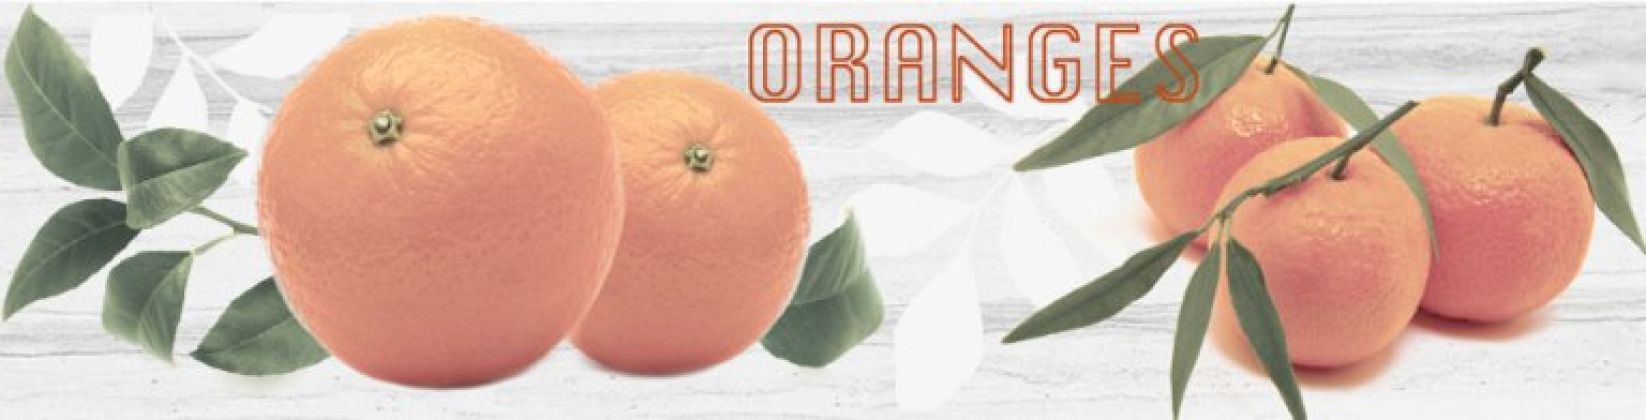 Naranjas 3 (Oranges) 10x40